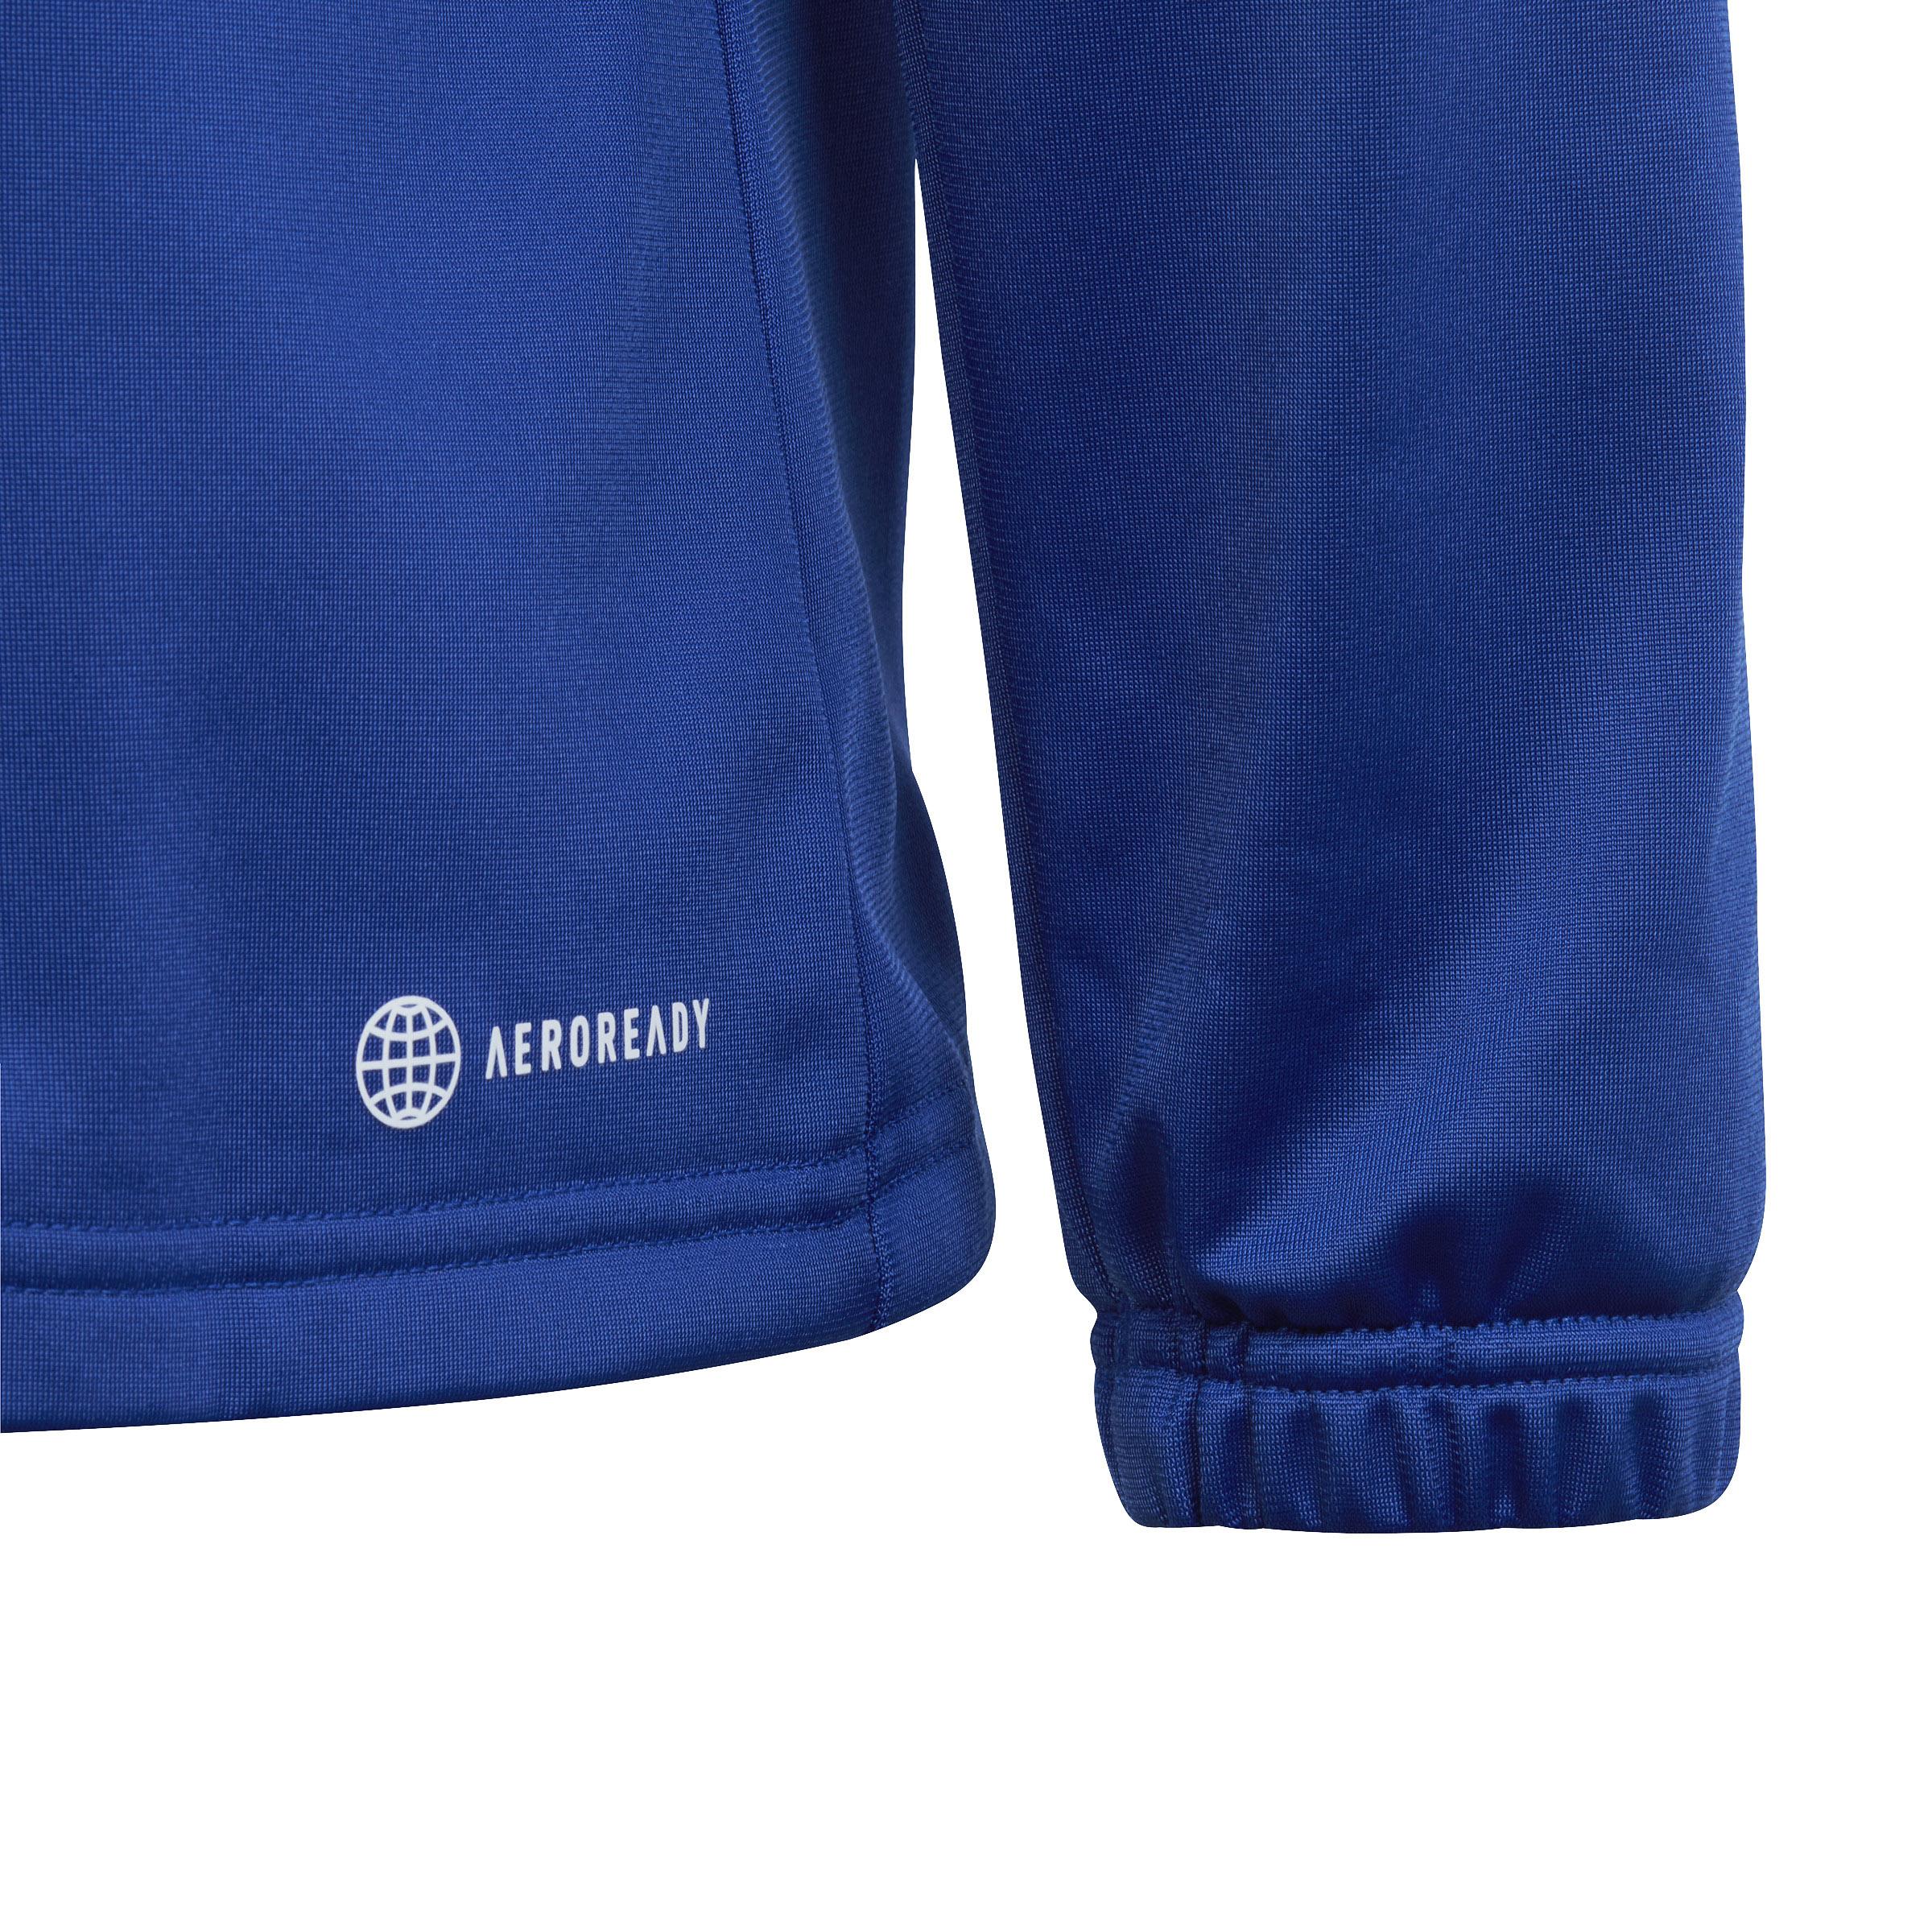 Jungen Adidas Shop ink im semi blue-white-legend SportScheck von Online Trainingsanzug kaufen lucid